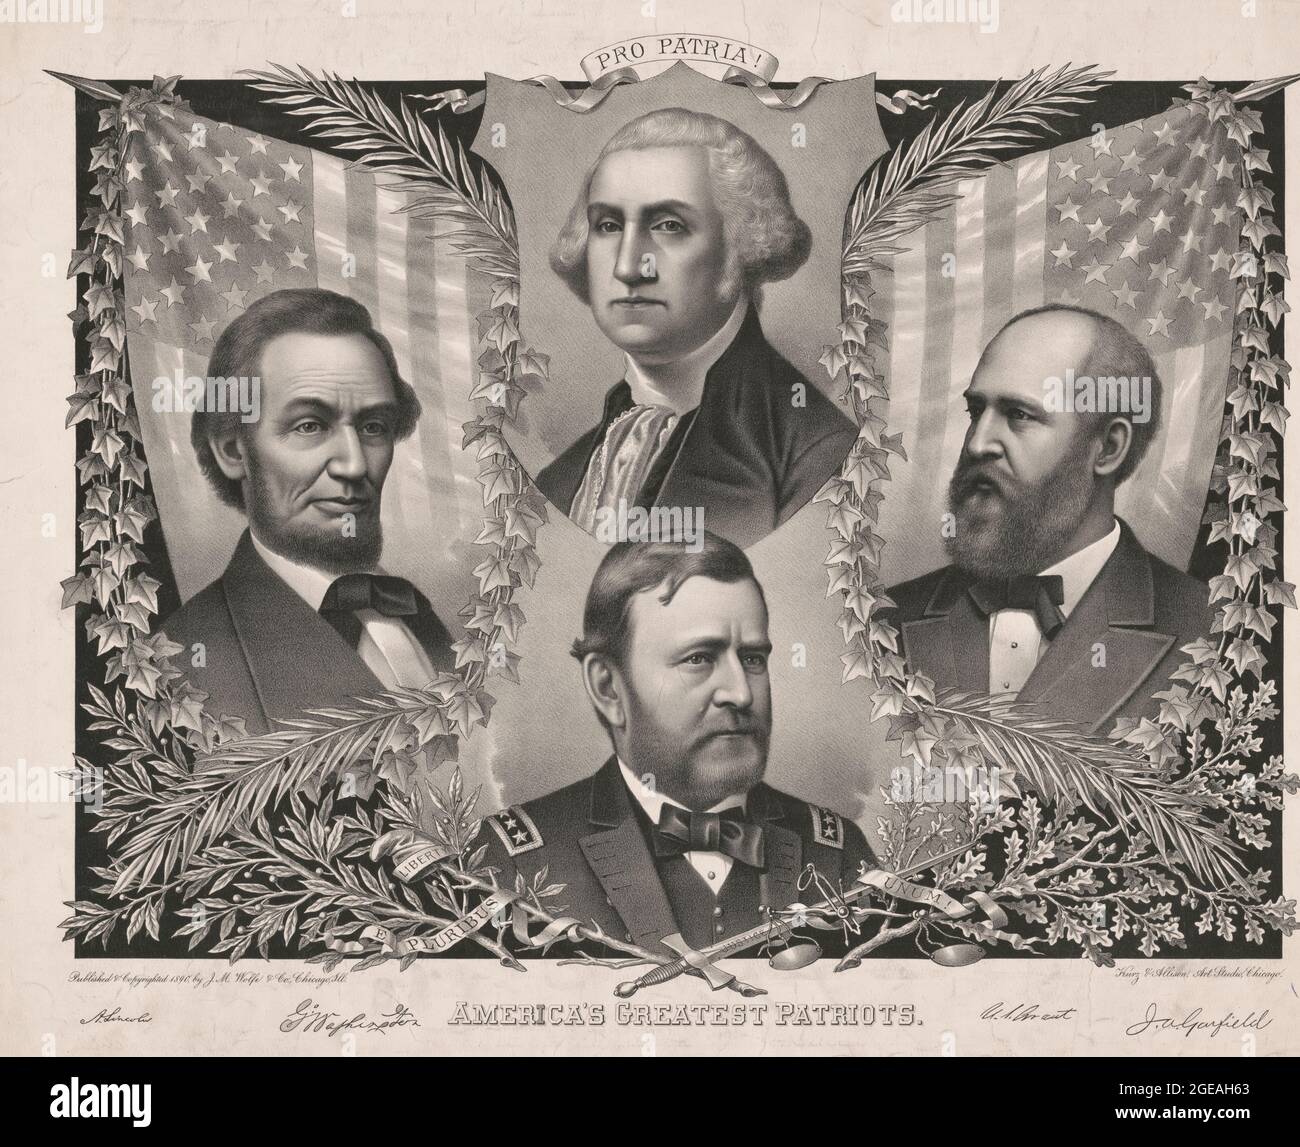 Amerikas größte Patrioten - Poster mit Amerikas größten Patrioten als George Washington, Abraham Lincoln, Ulysses Grant und James Garfield, um 1890 Stockfoto